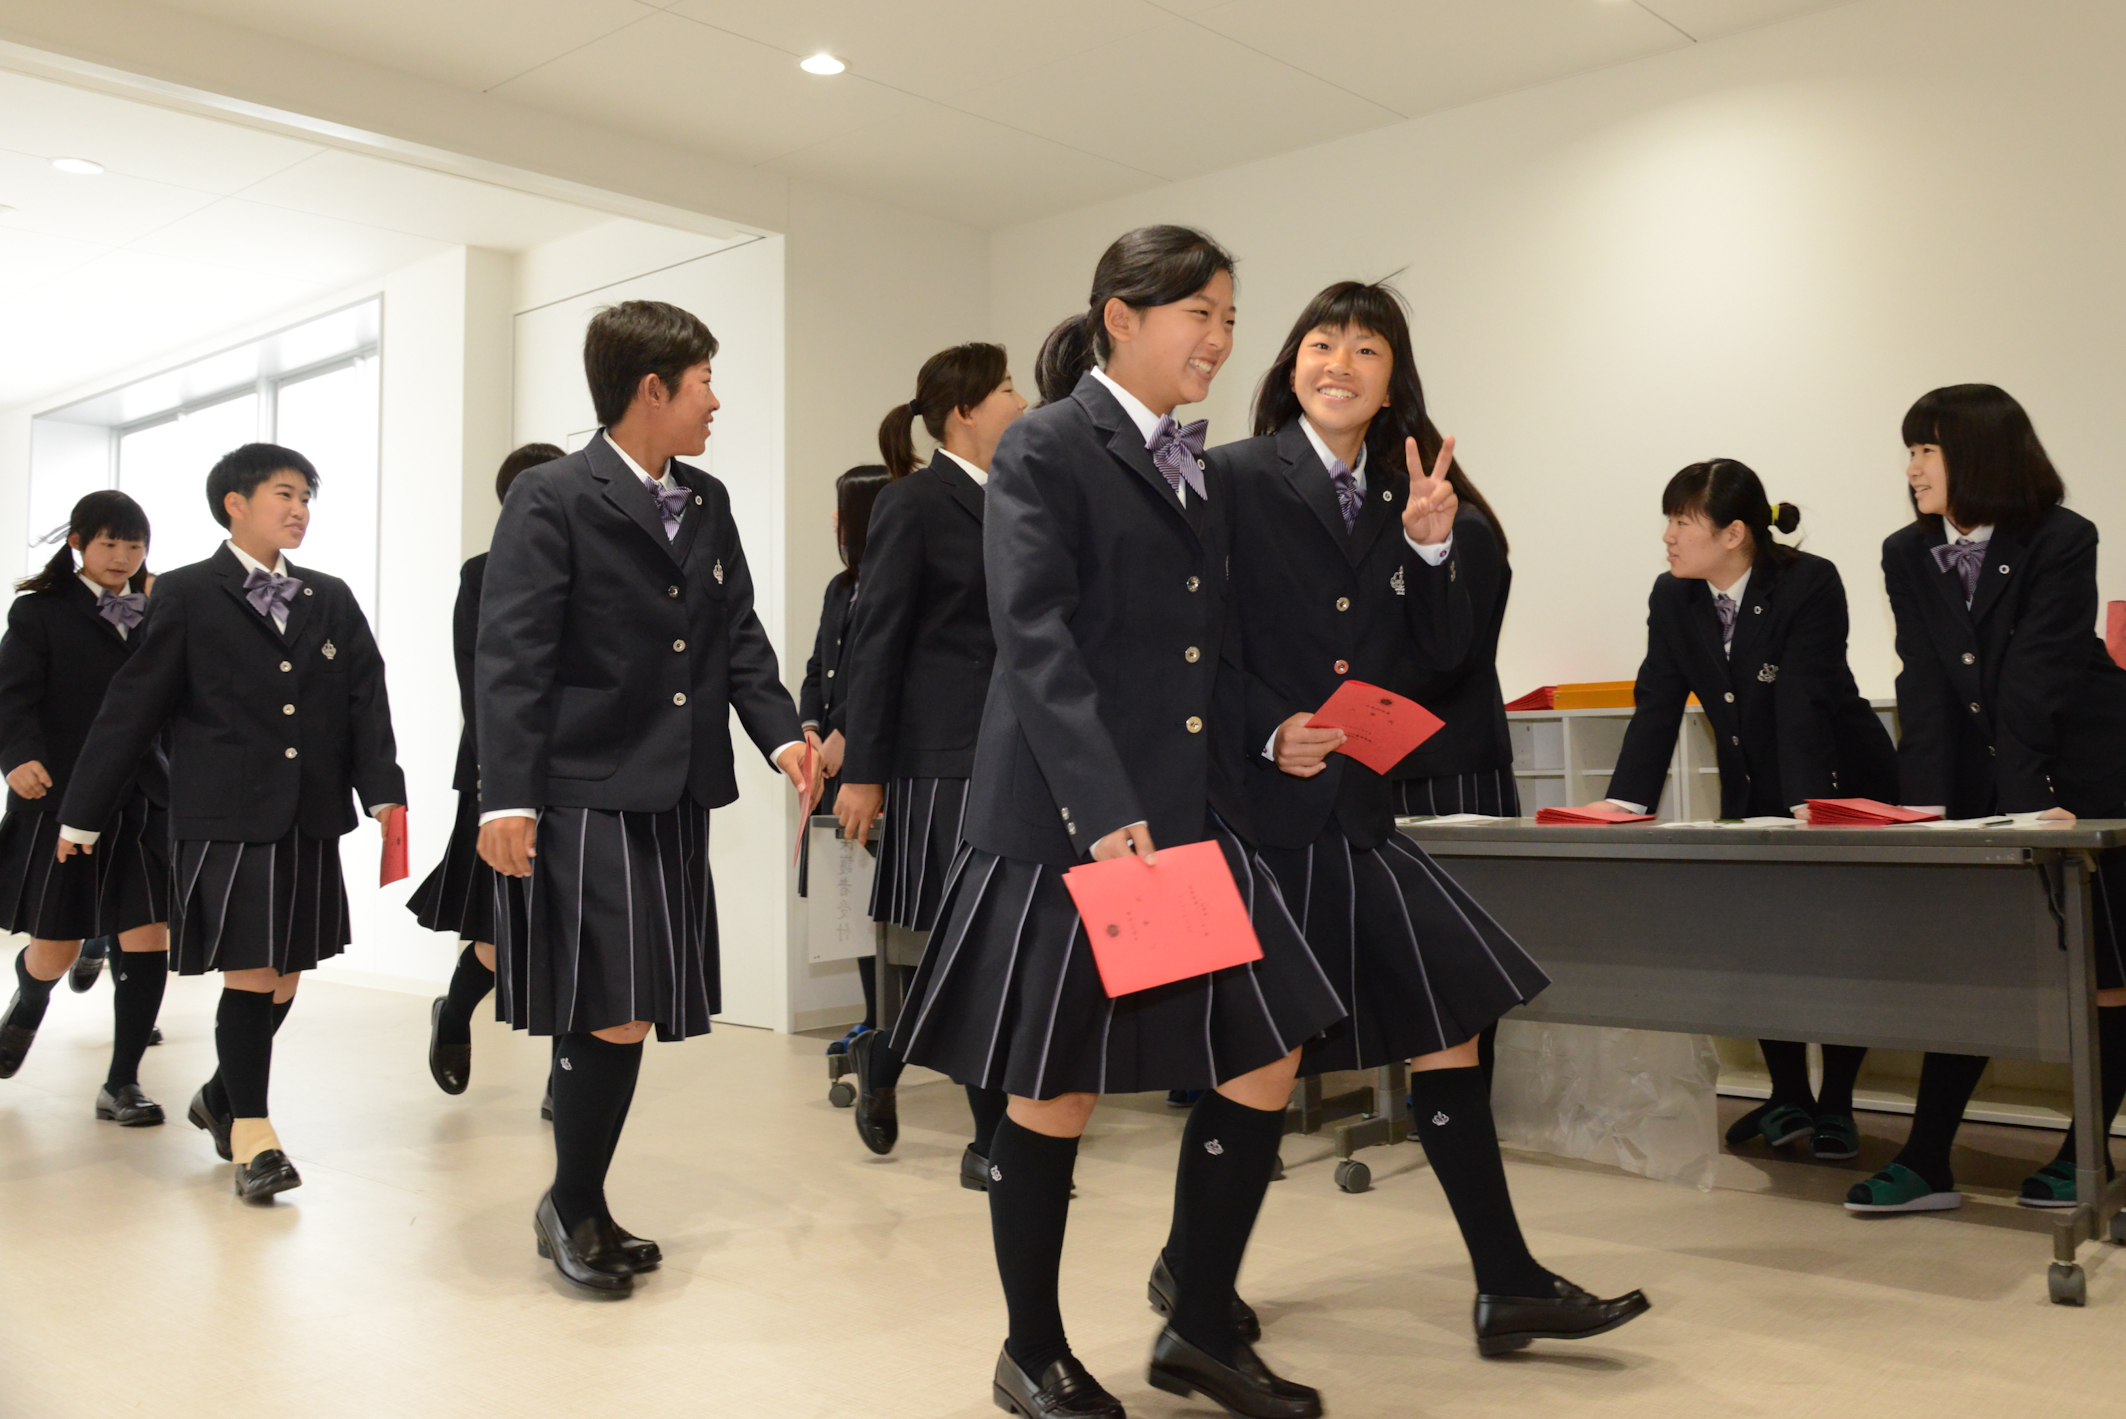 ニュース トピックス 大阪で美容師 保育士 資格取得をめざすなら香ヶ丘リベルテ高等学校